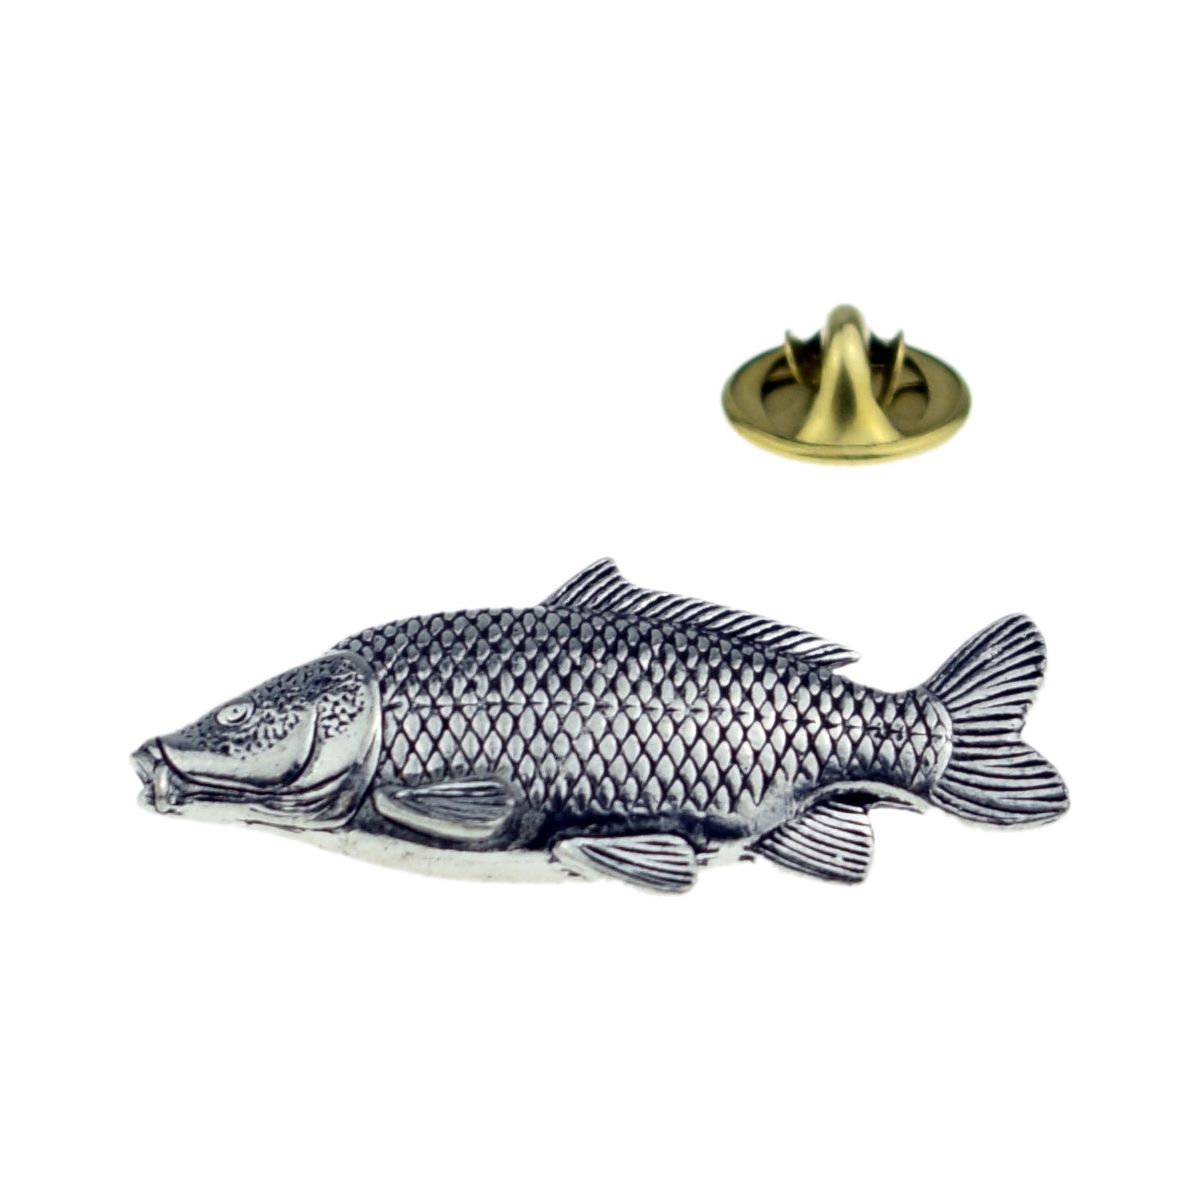 Common Carp Fish Pewter Lapel Pin Badge - Ashton and Finch